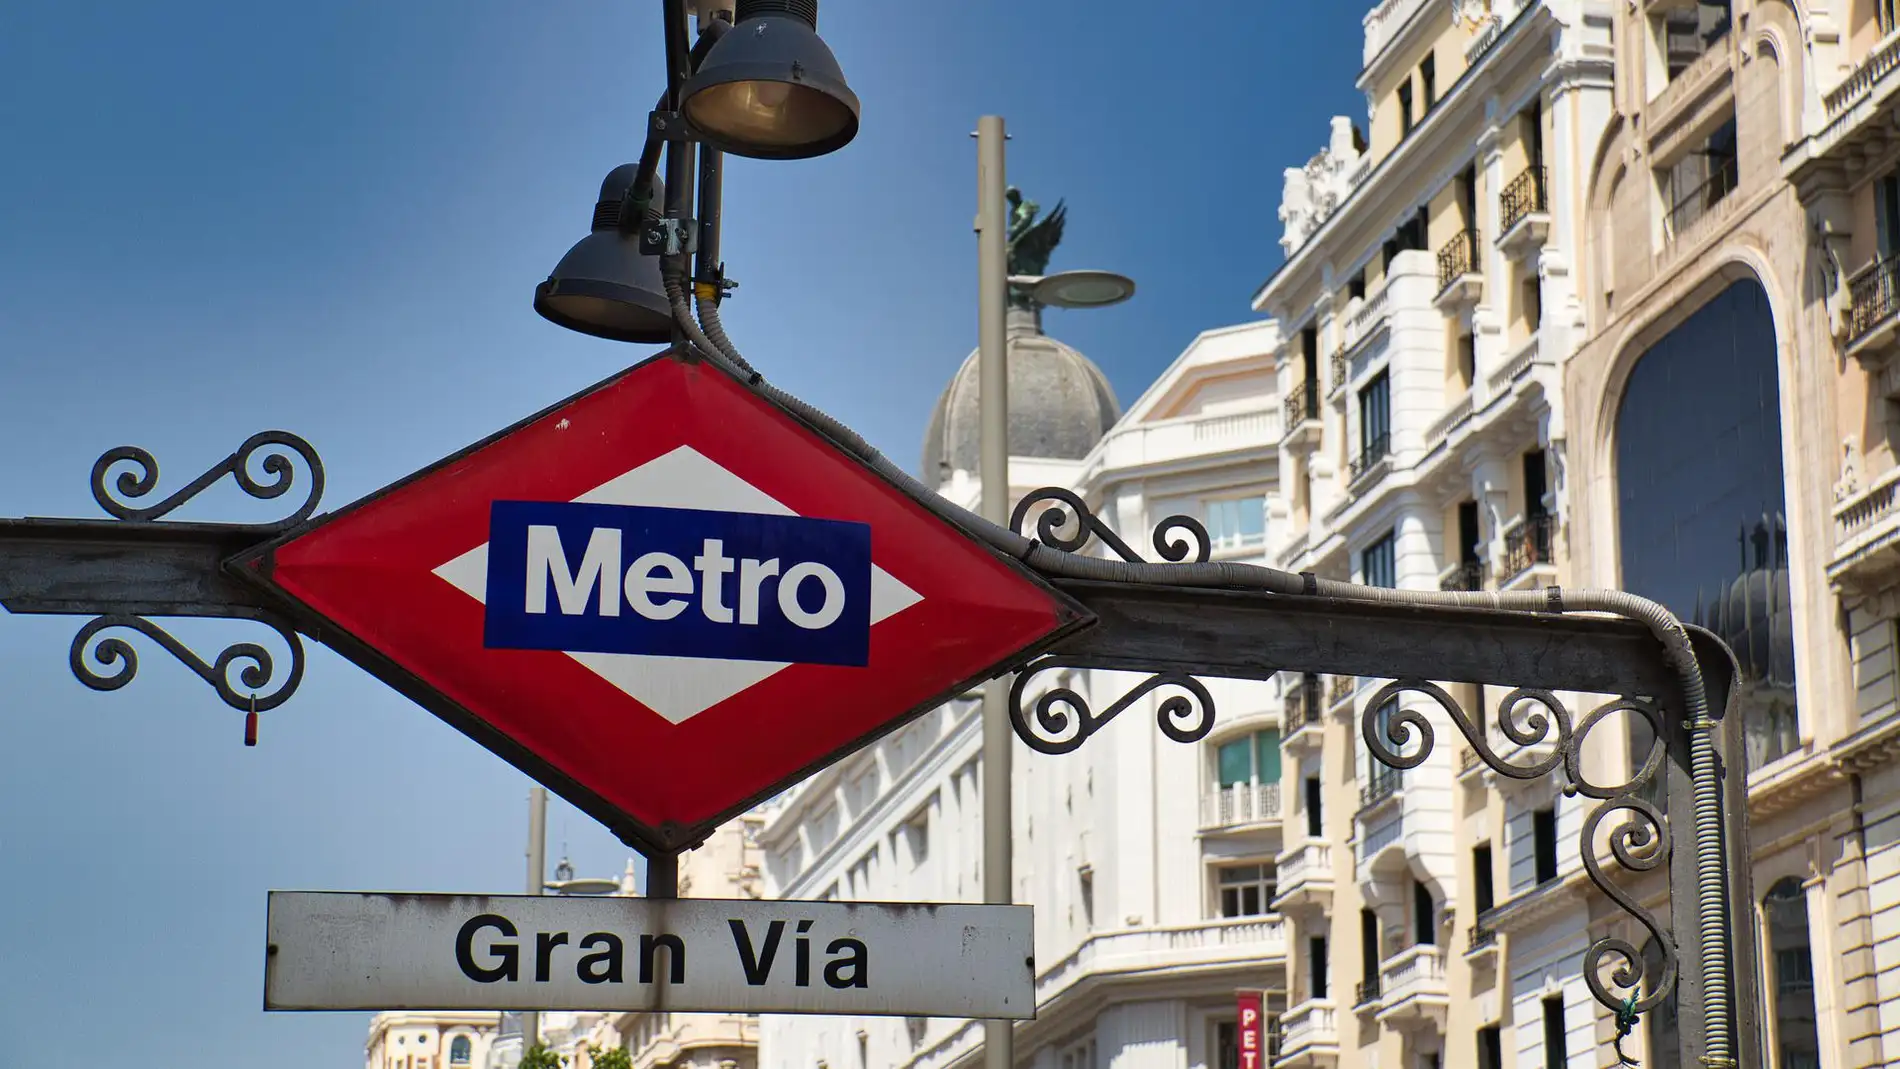 Foto de archivo del cartel de la estación de Gran Vía, Madrid/ Pixabay